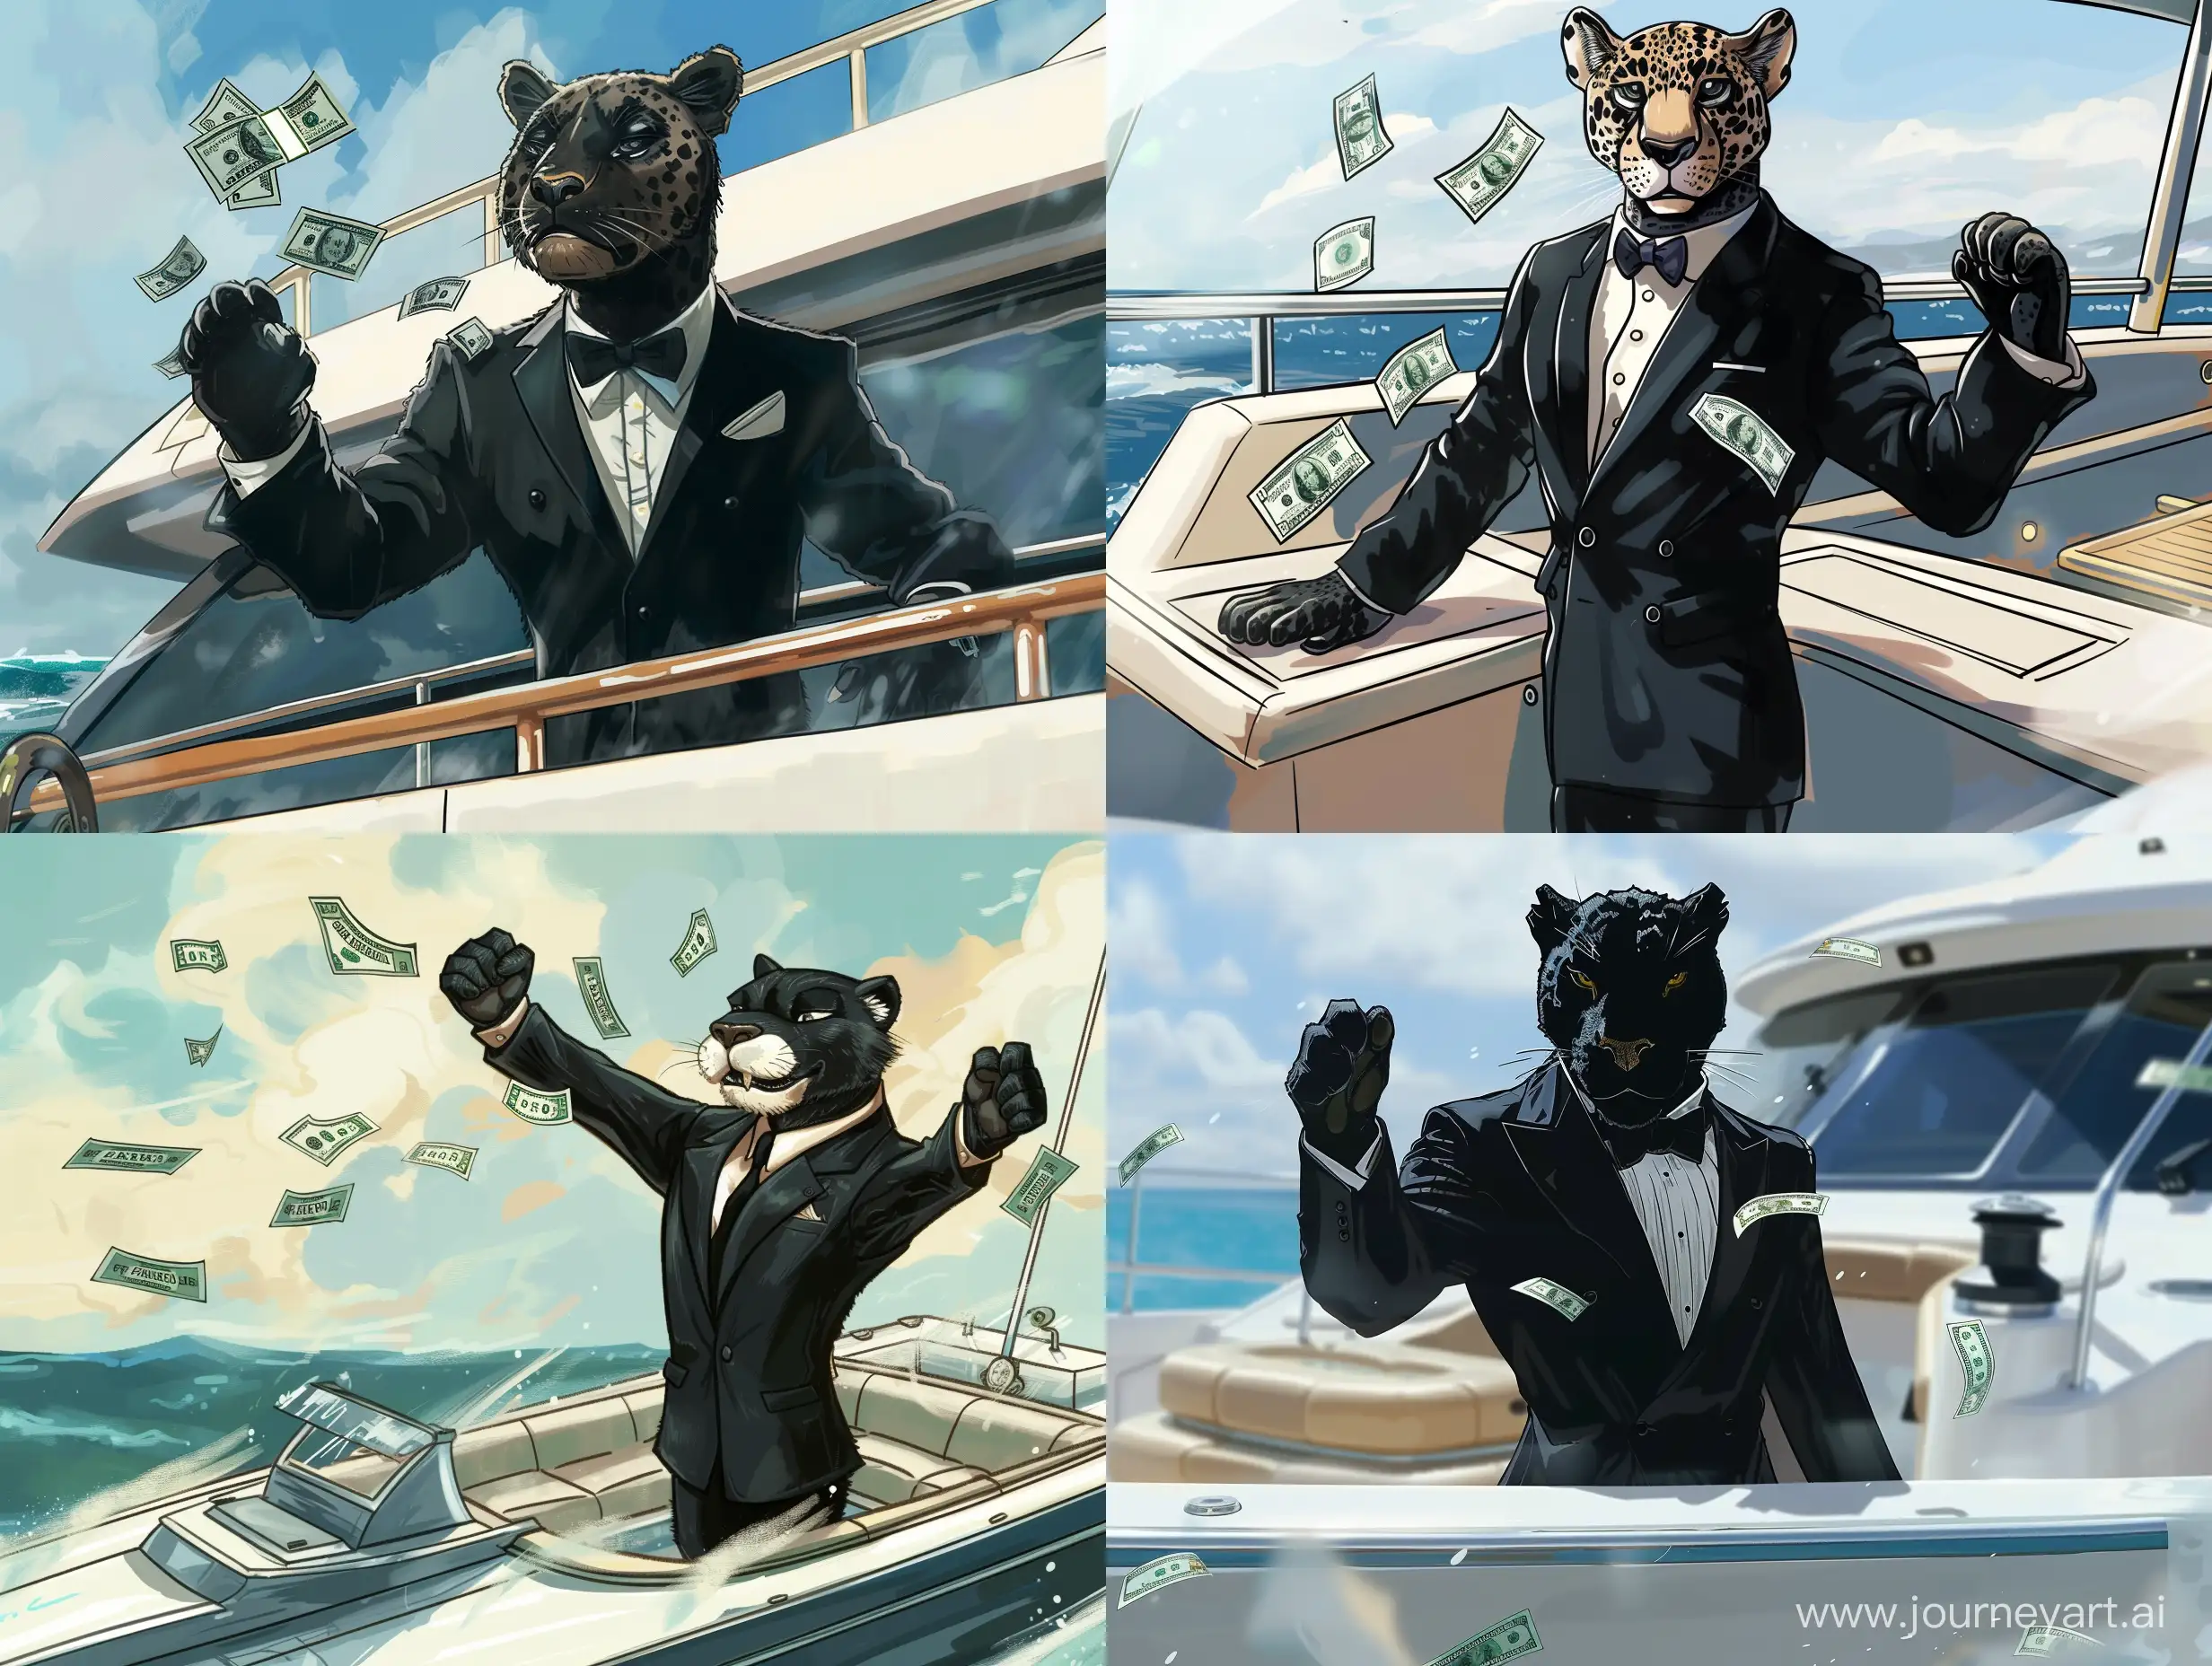 нарисованная картинка стиль мульт реализм пантера в черном костюме на яхте раскидывает доллары  